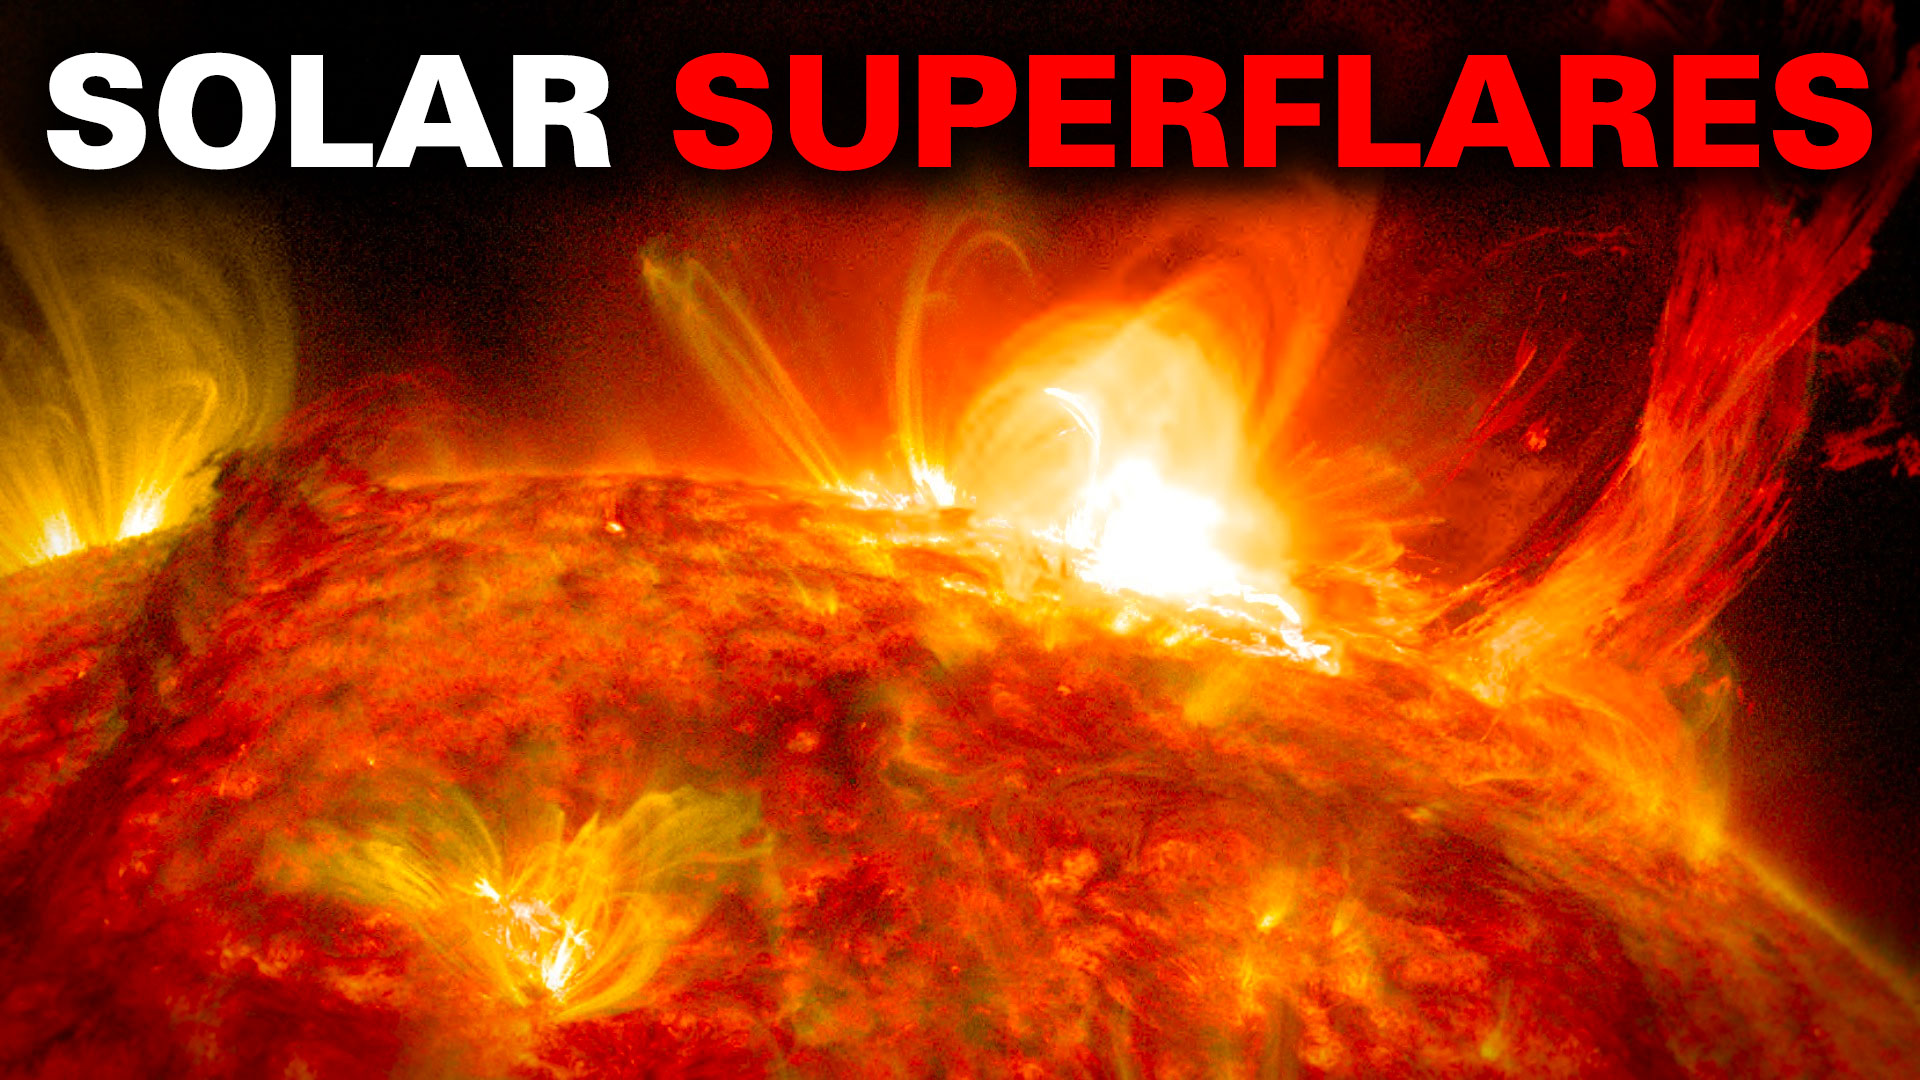 Solar flare. Image credit: NASA